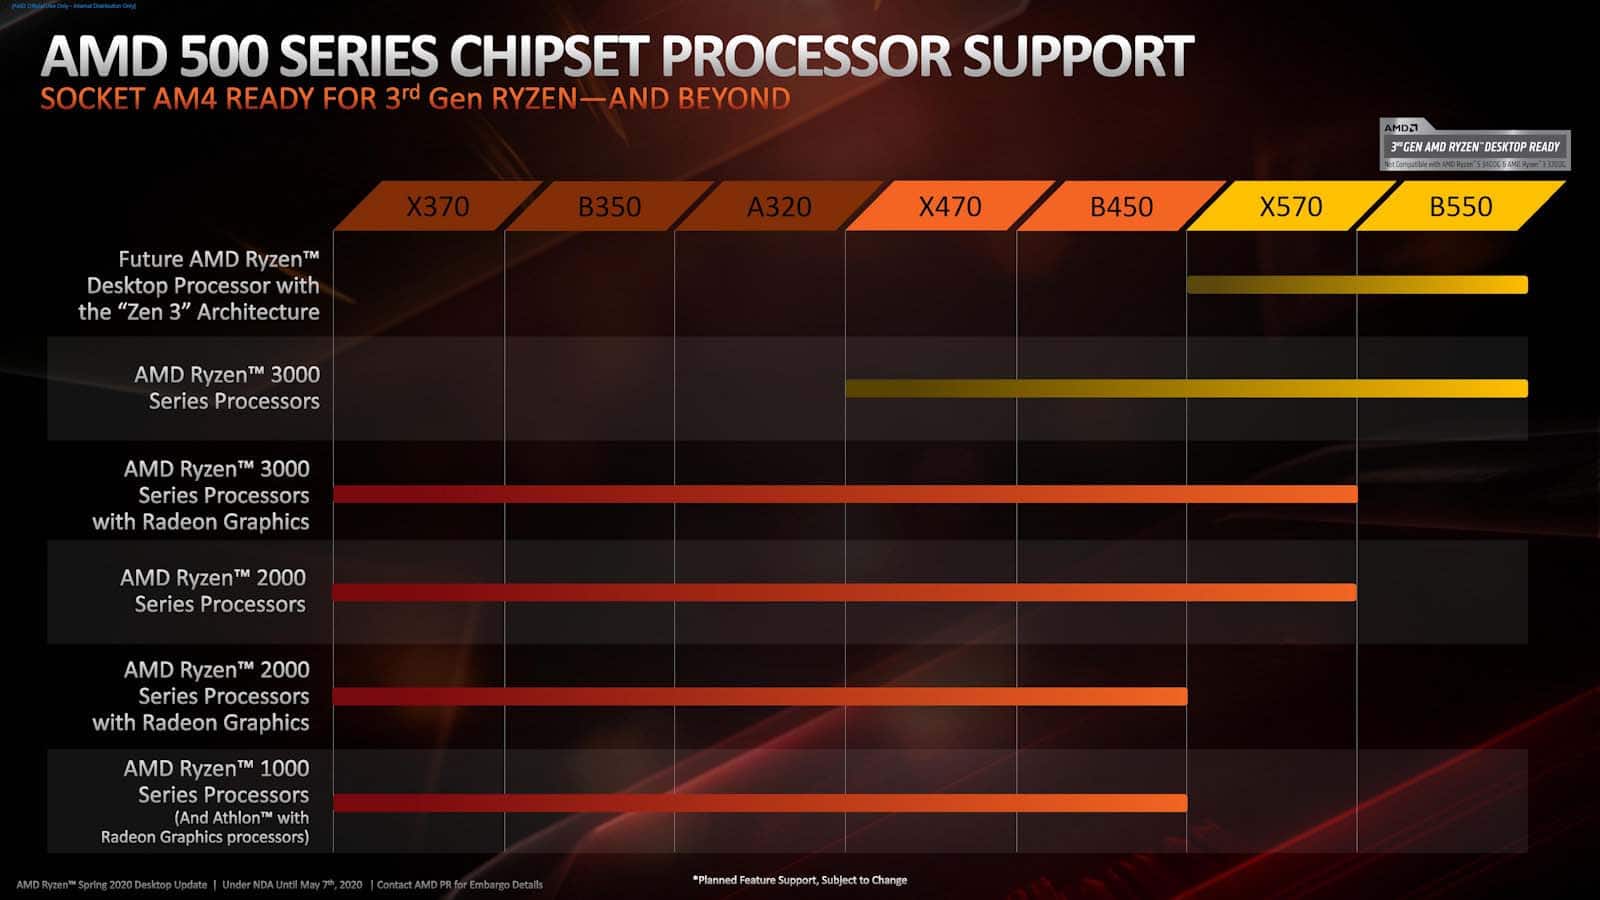 Les chipsets X470 et B450 supporteront les CPU AMD Ryzen 4000